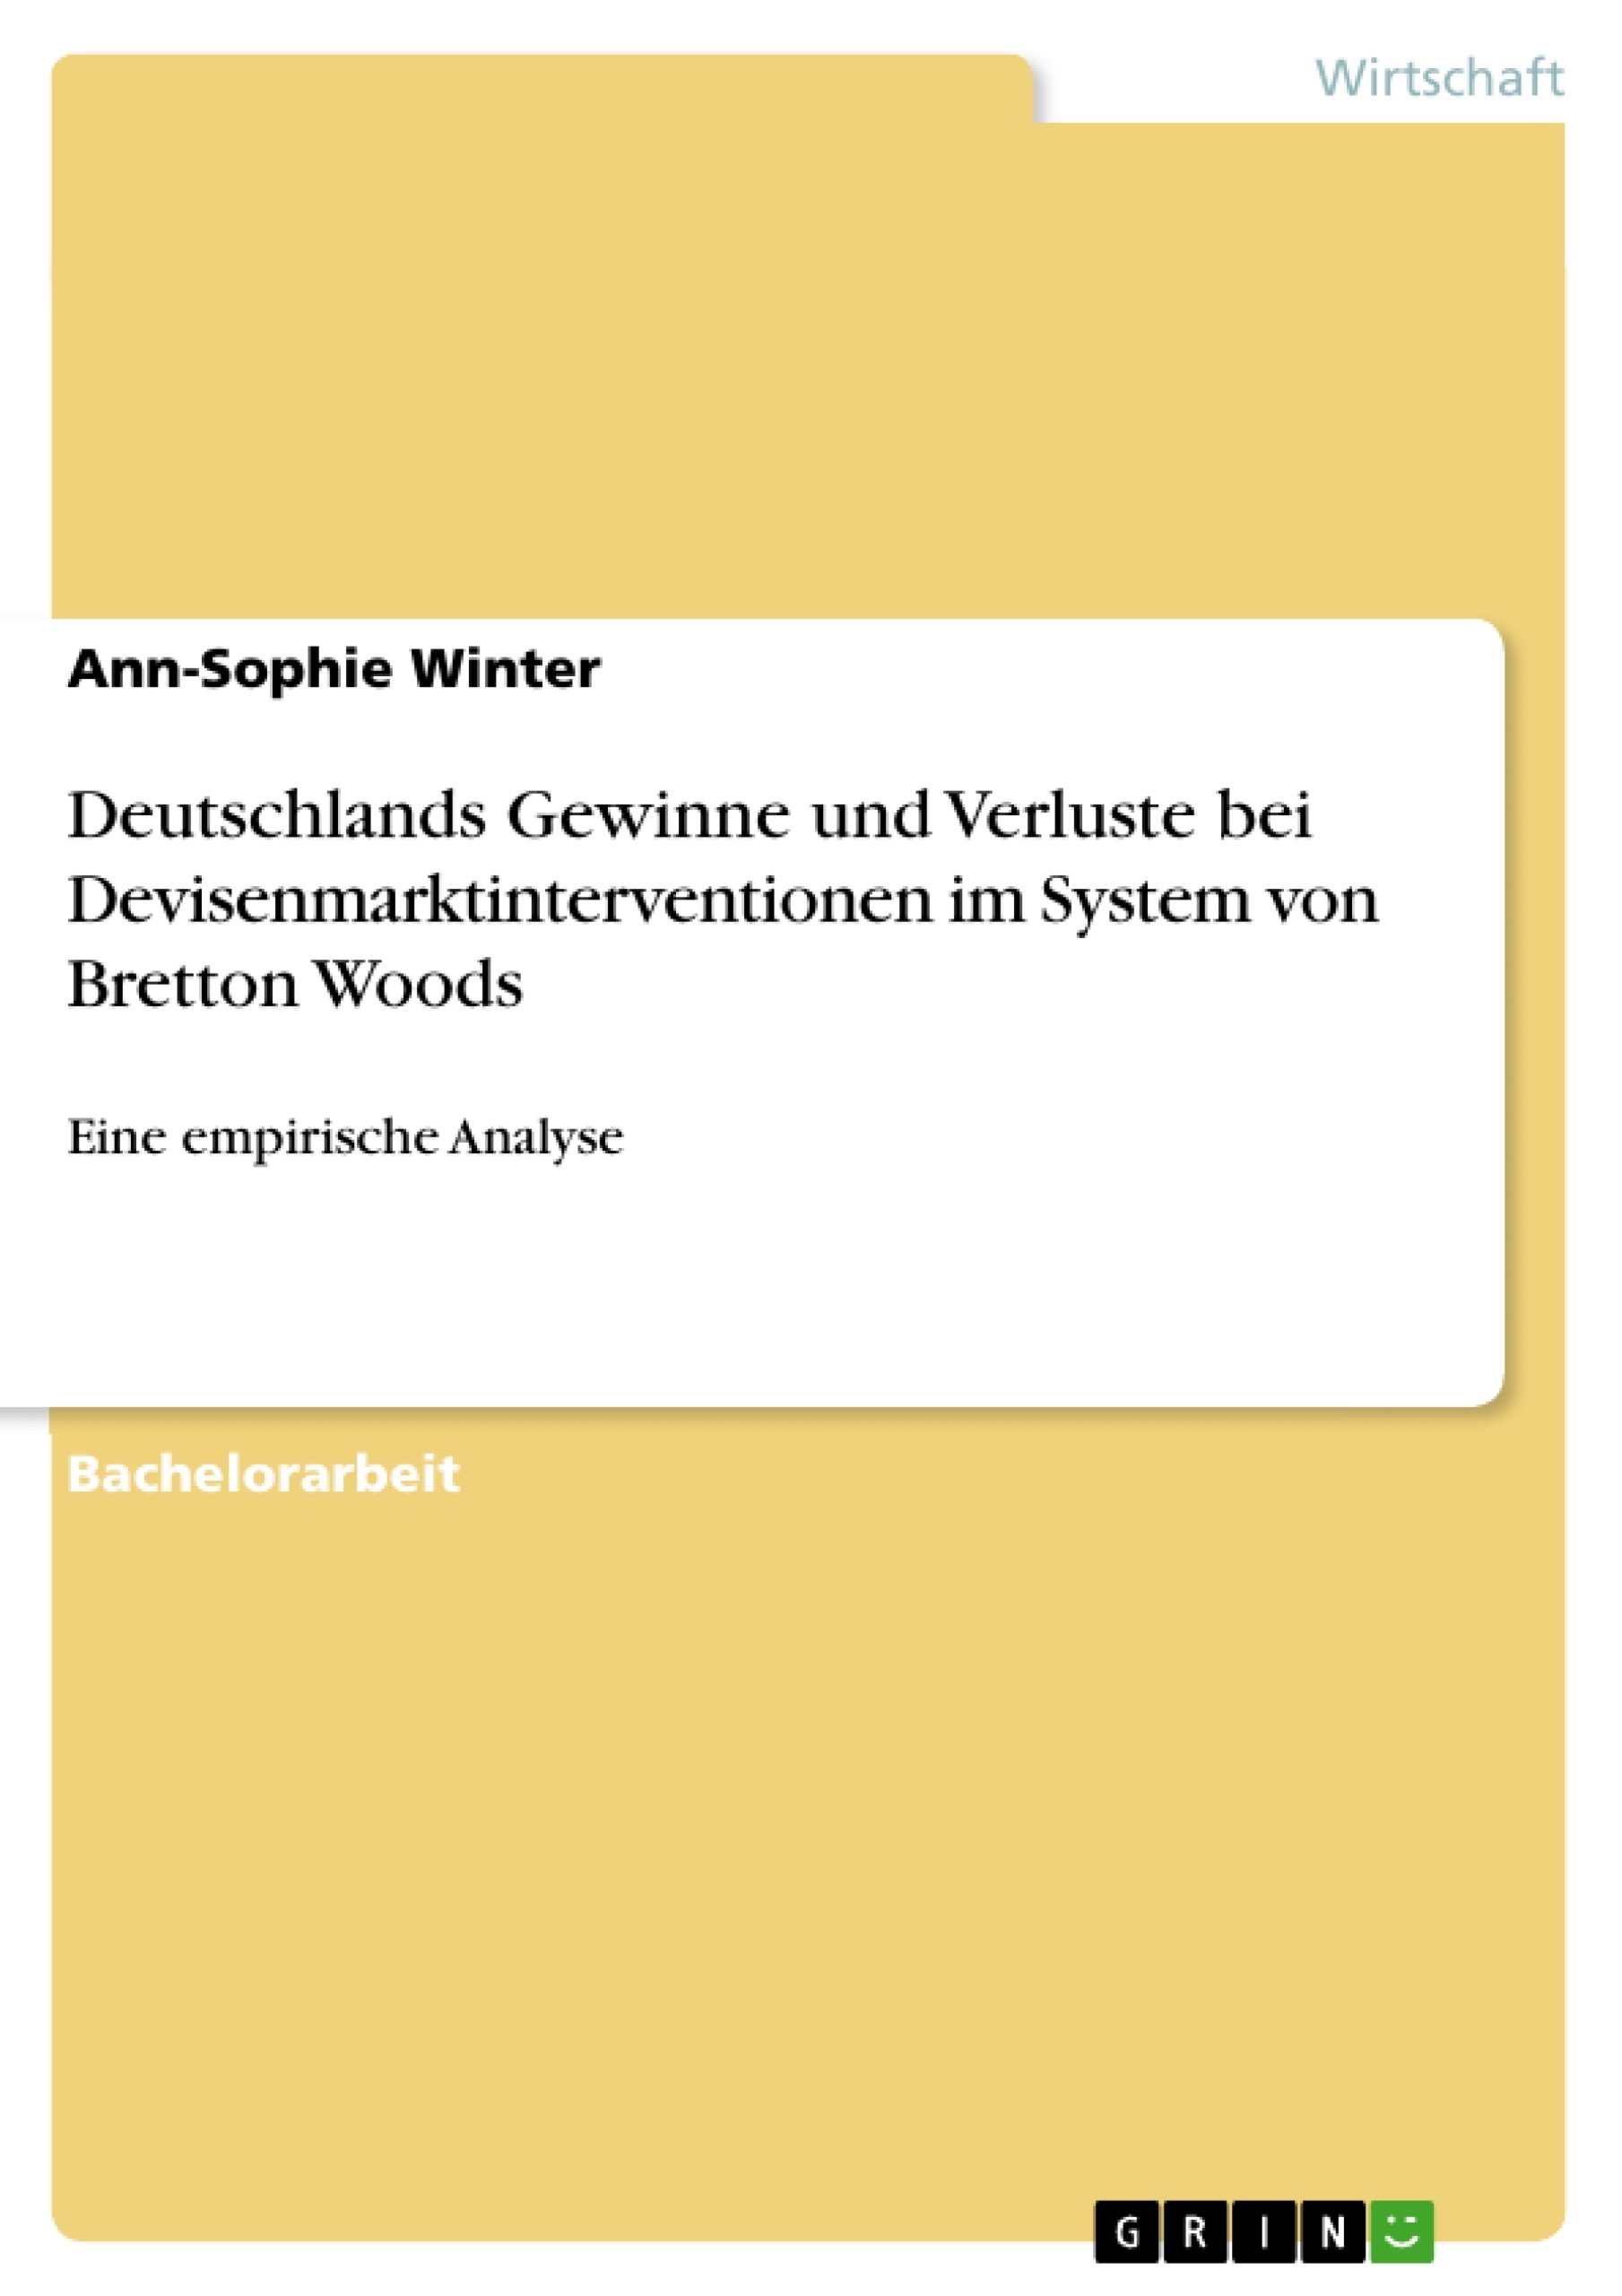 Titel: Deutschlands Gewinne und Verluste bei Devisenmarktinterventionen im System von Bretton Woods